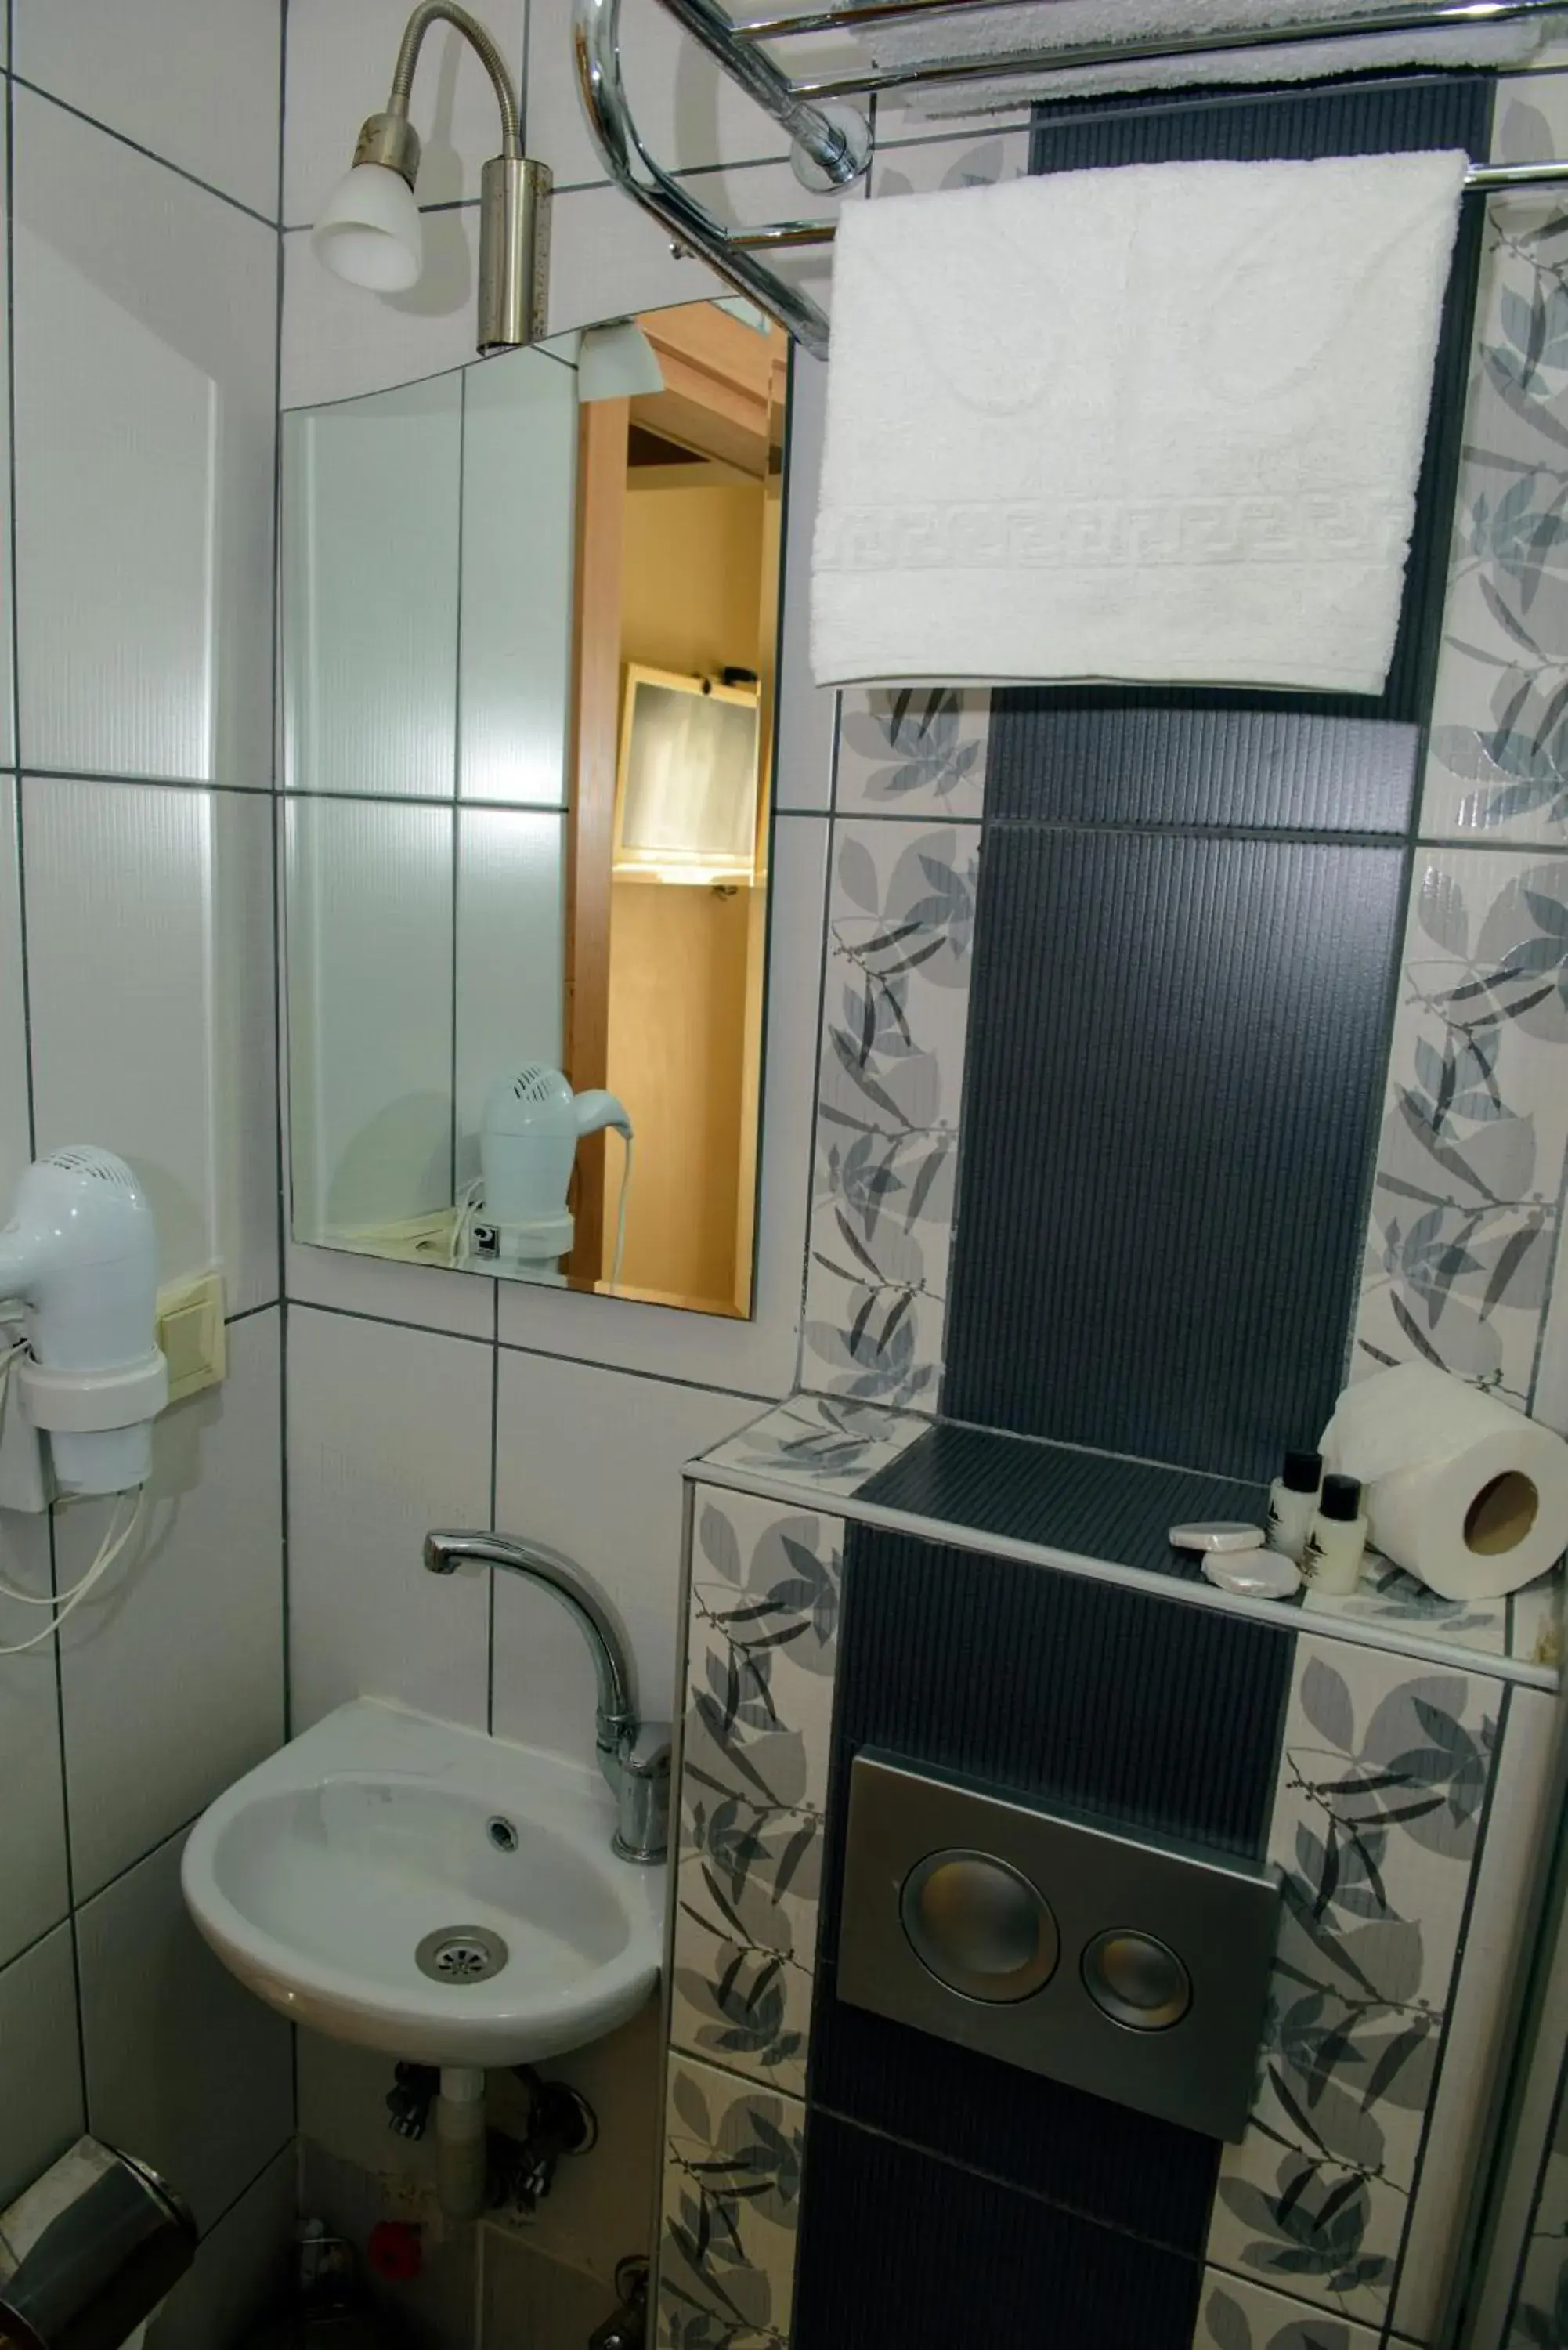 Toilet, Bathroom in Tayahatun Hotel